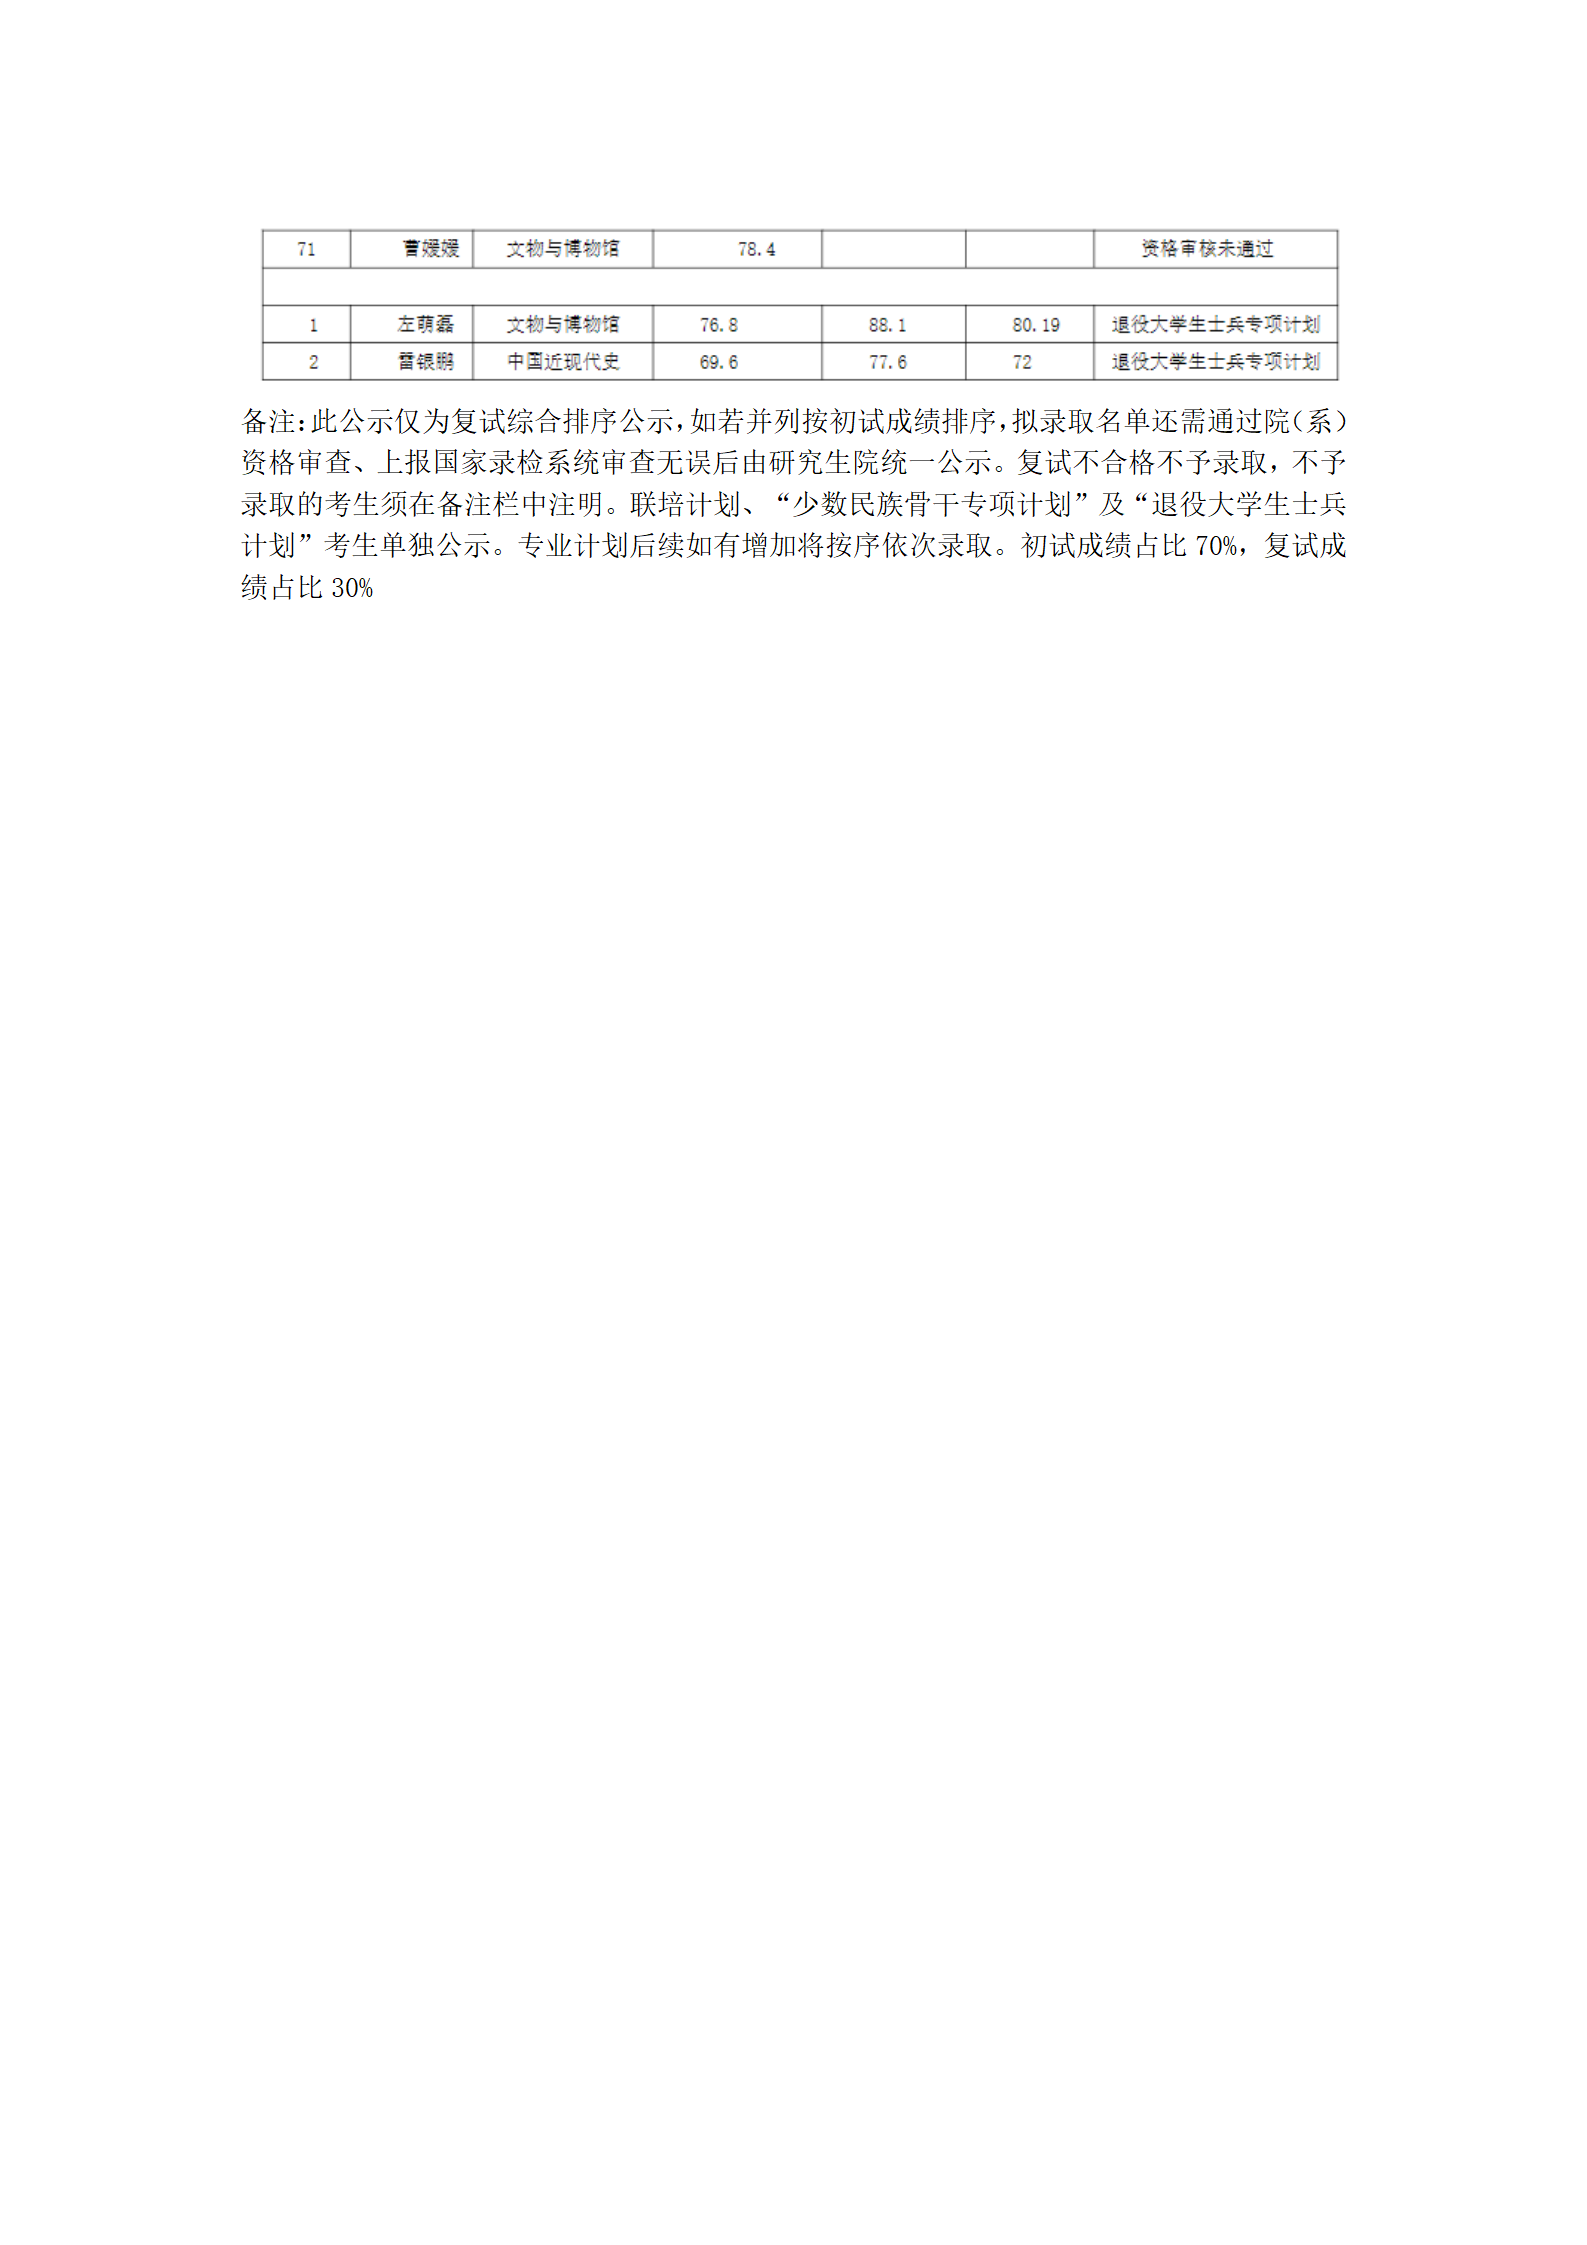 郑州大学历史学院2022年硕士研究生一志愿复试结果综合排序公示表_07.png